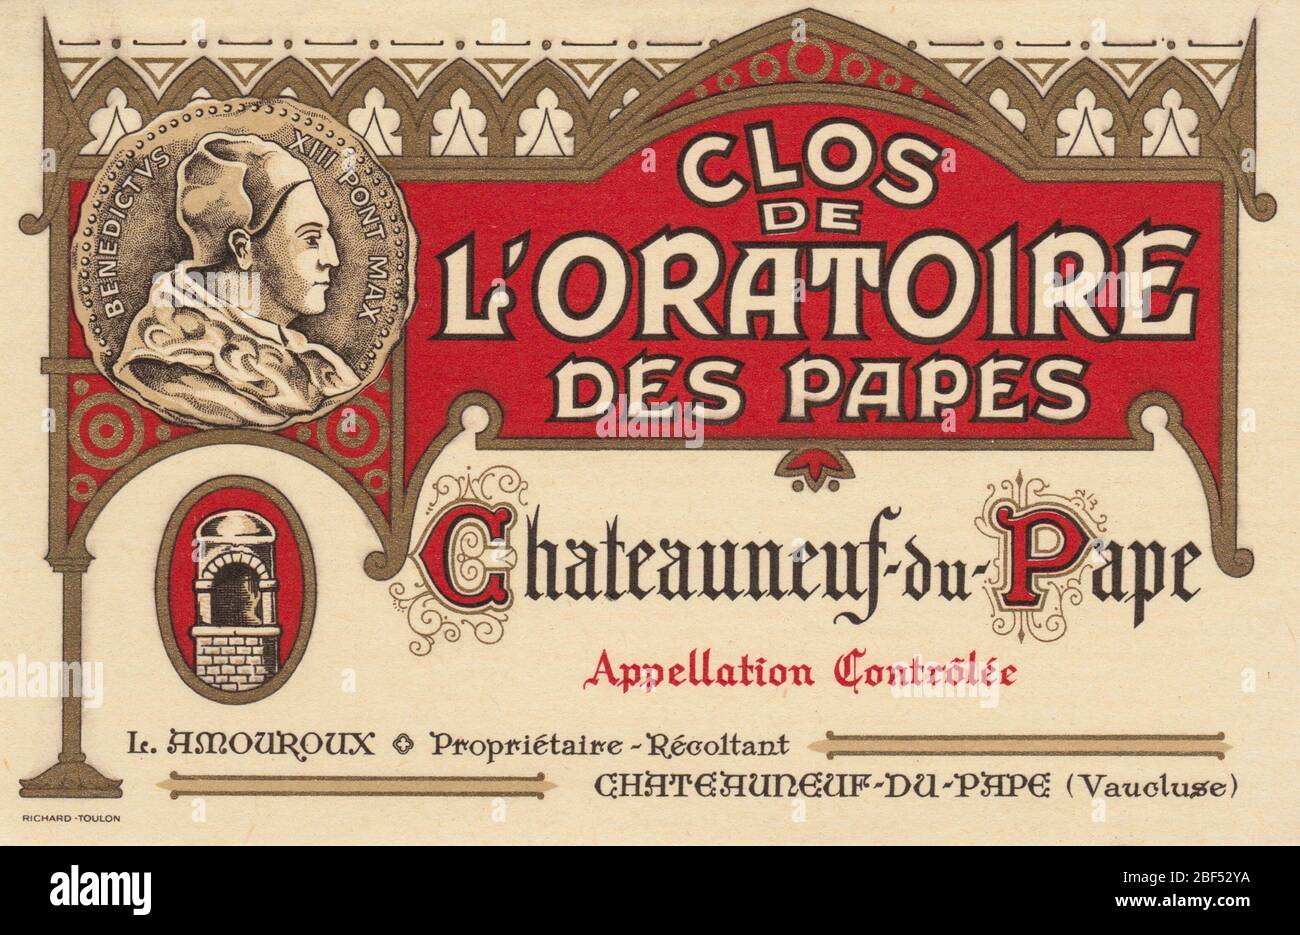 Unused vintage wine label from a Clos de l’Oratoire des Papes, Chateauneuf-du-Pape, France Stock Photo